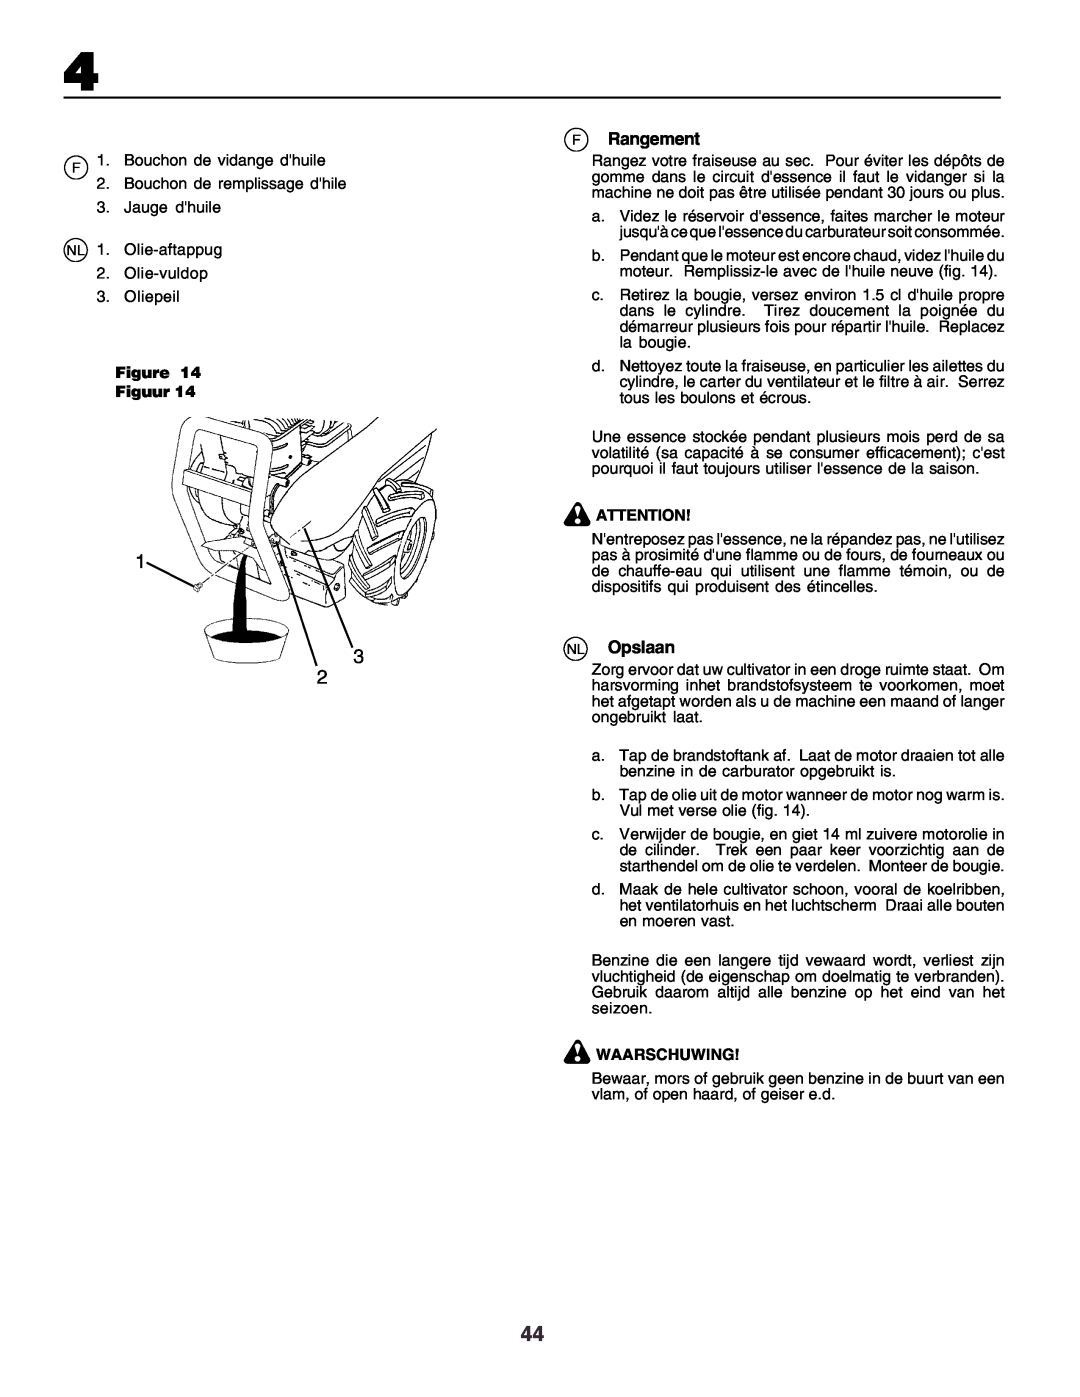 Husqvarna crt51 instruction manual FRangement, NL Opslaan, Figure Figuur, Waarschuwing 